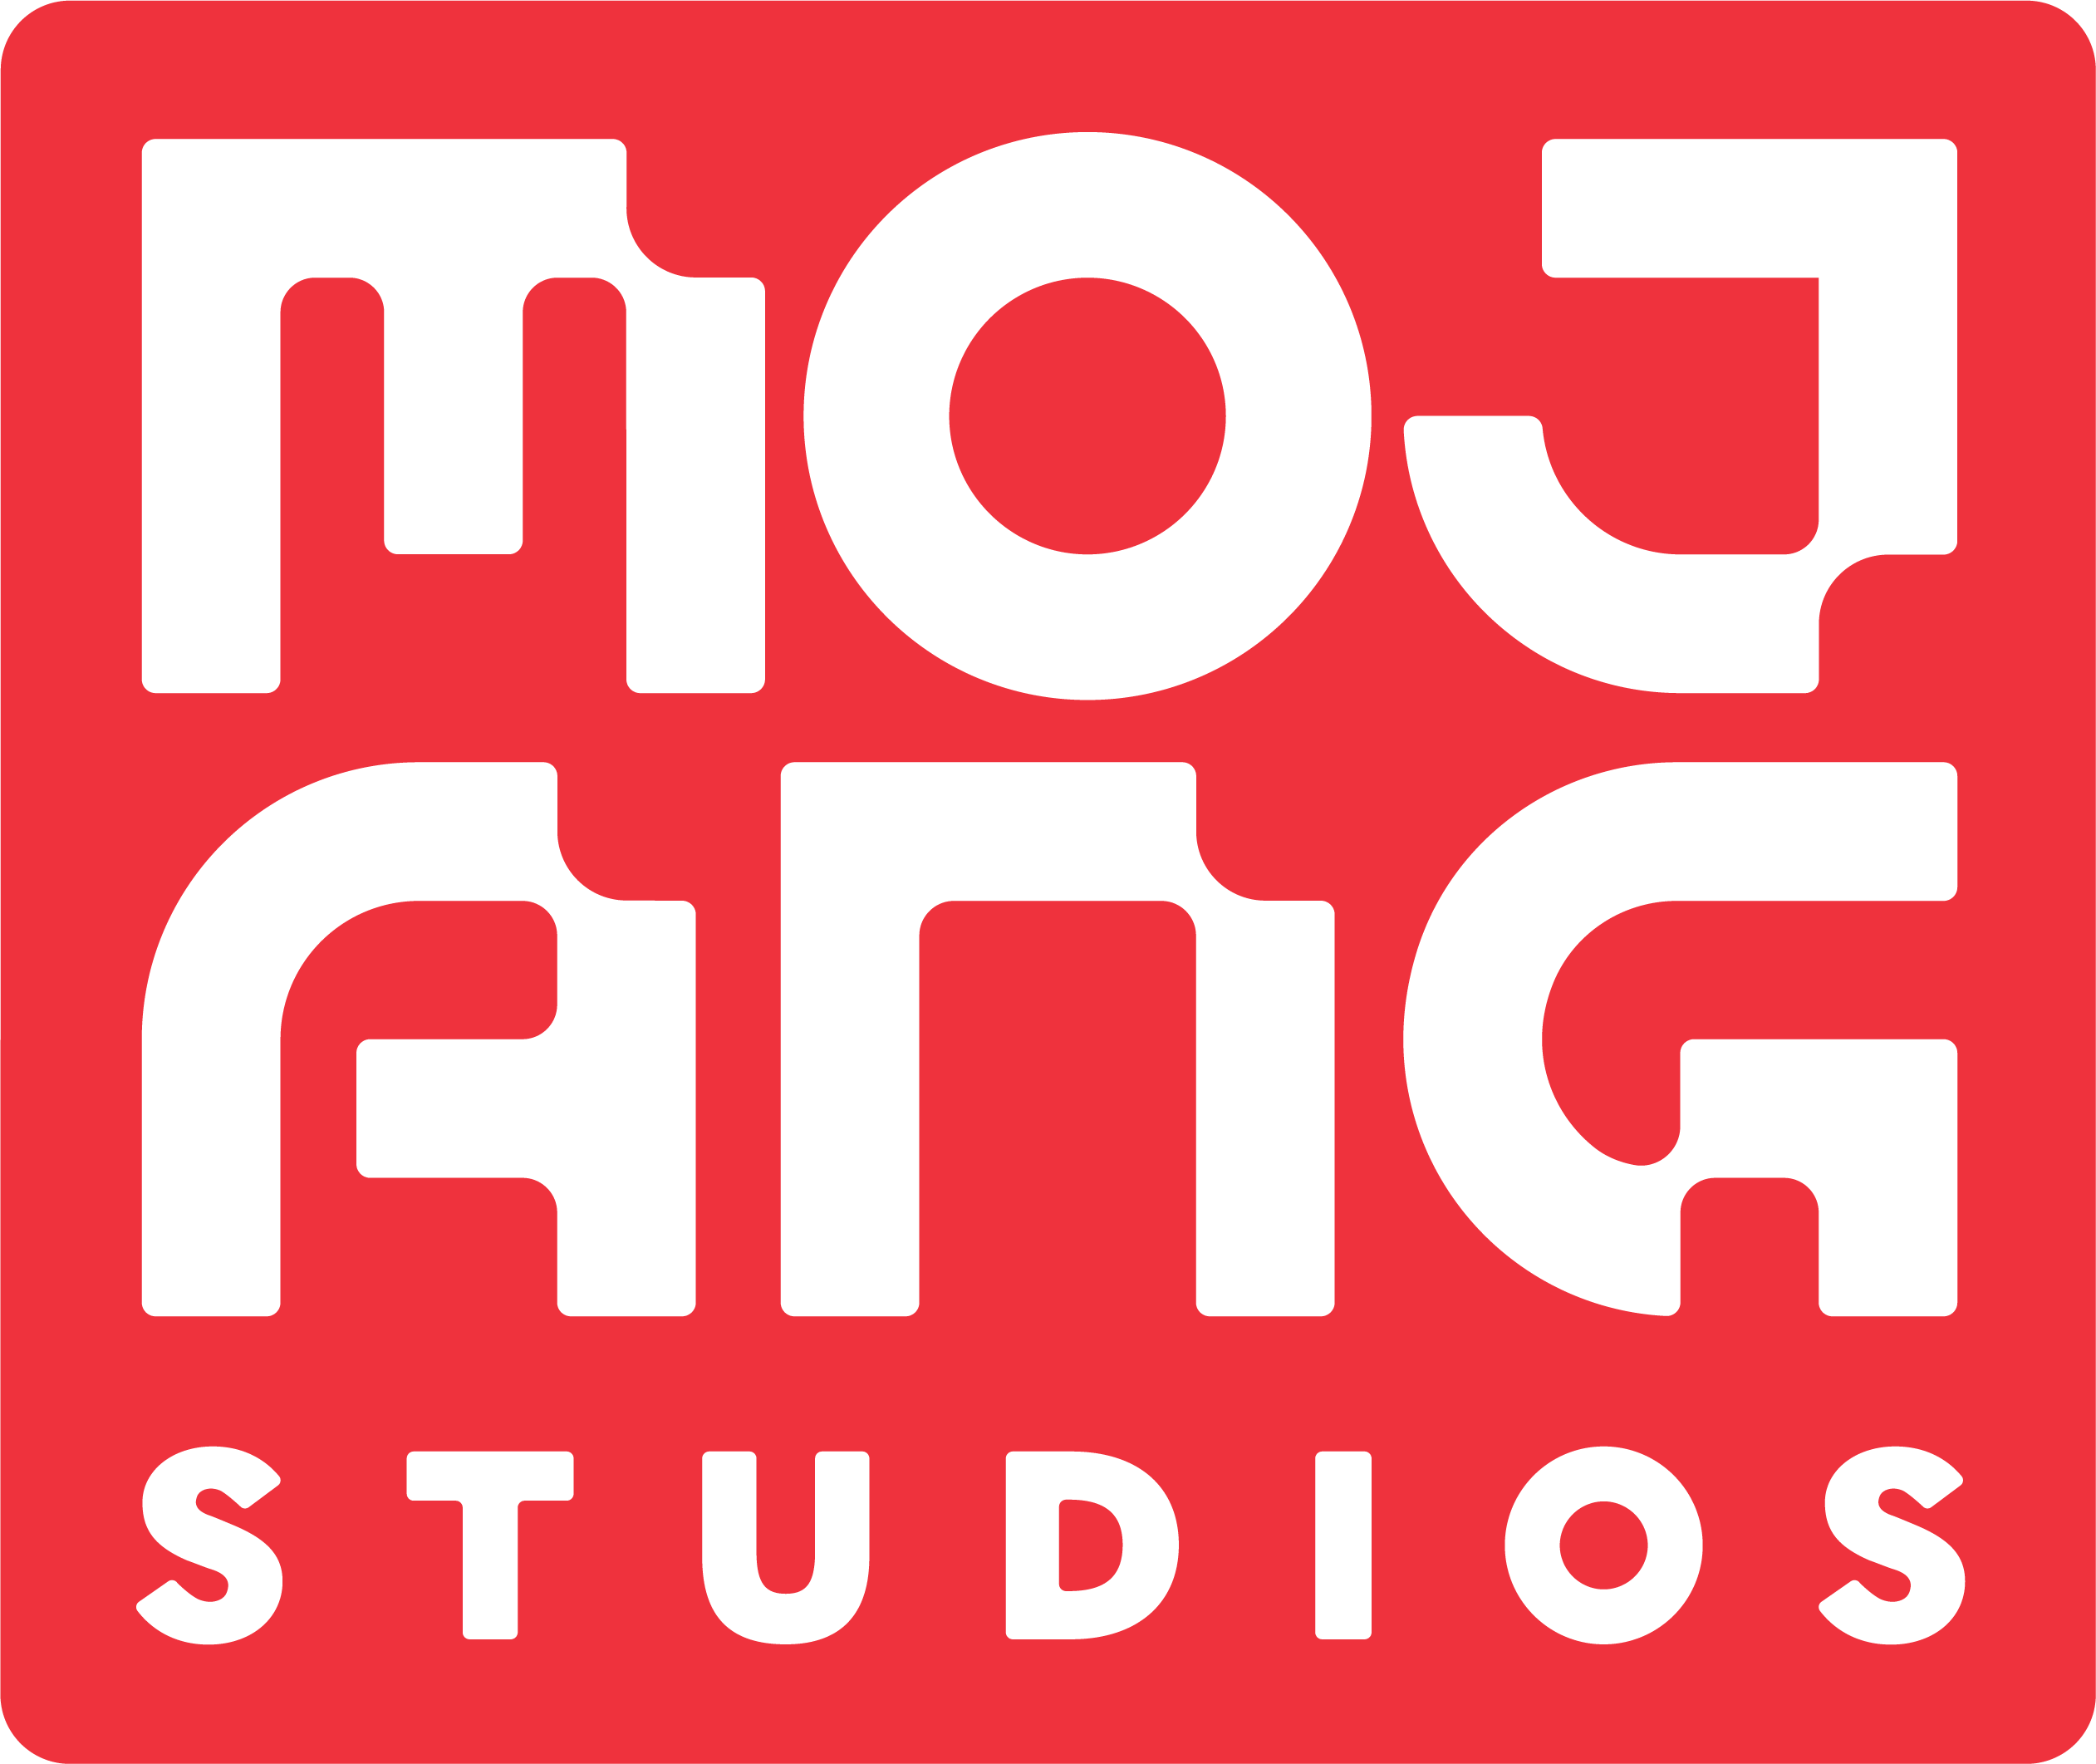 Make New Mojang Account  Sign Up MOJANG 